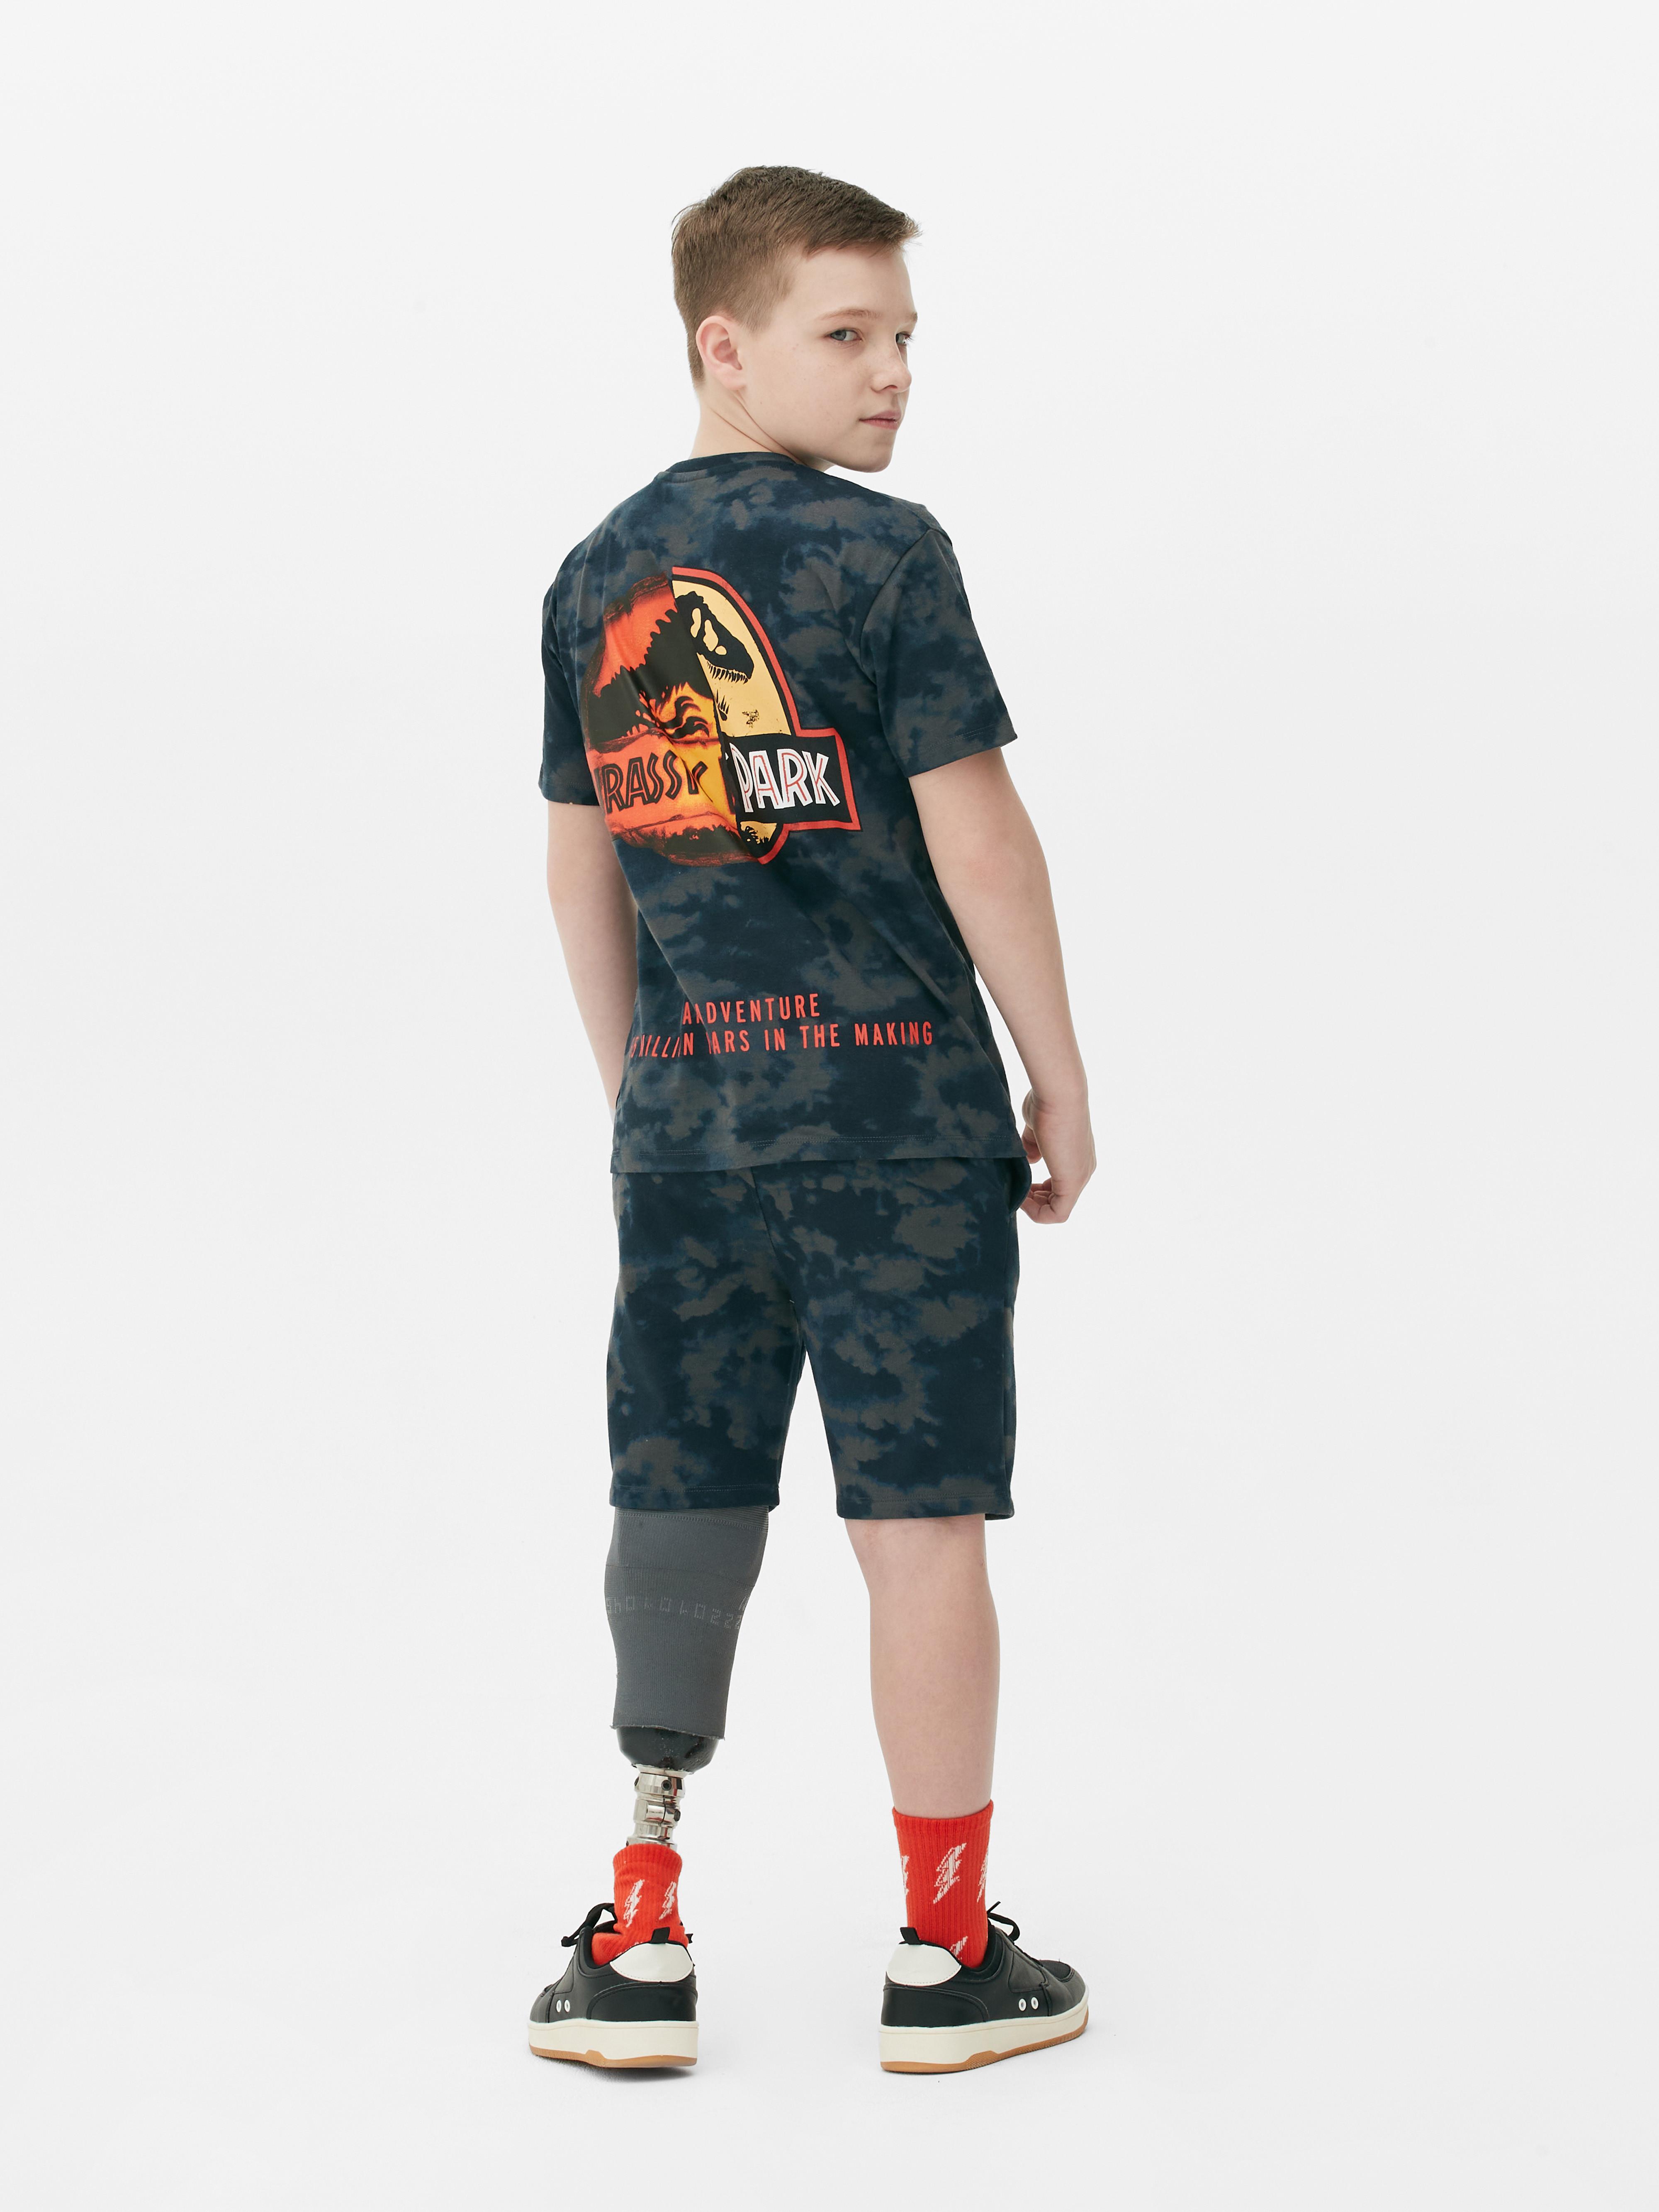 „Jurassic Park“ Schlafanzug aus T-Shirt und Shorts